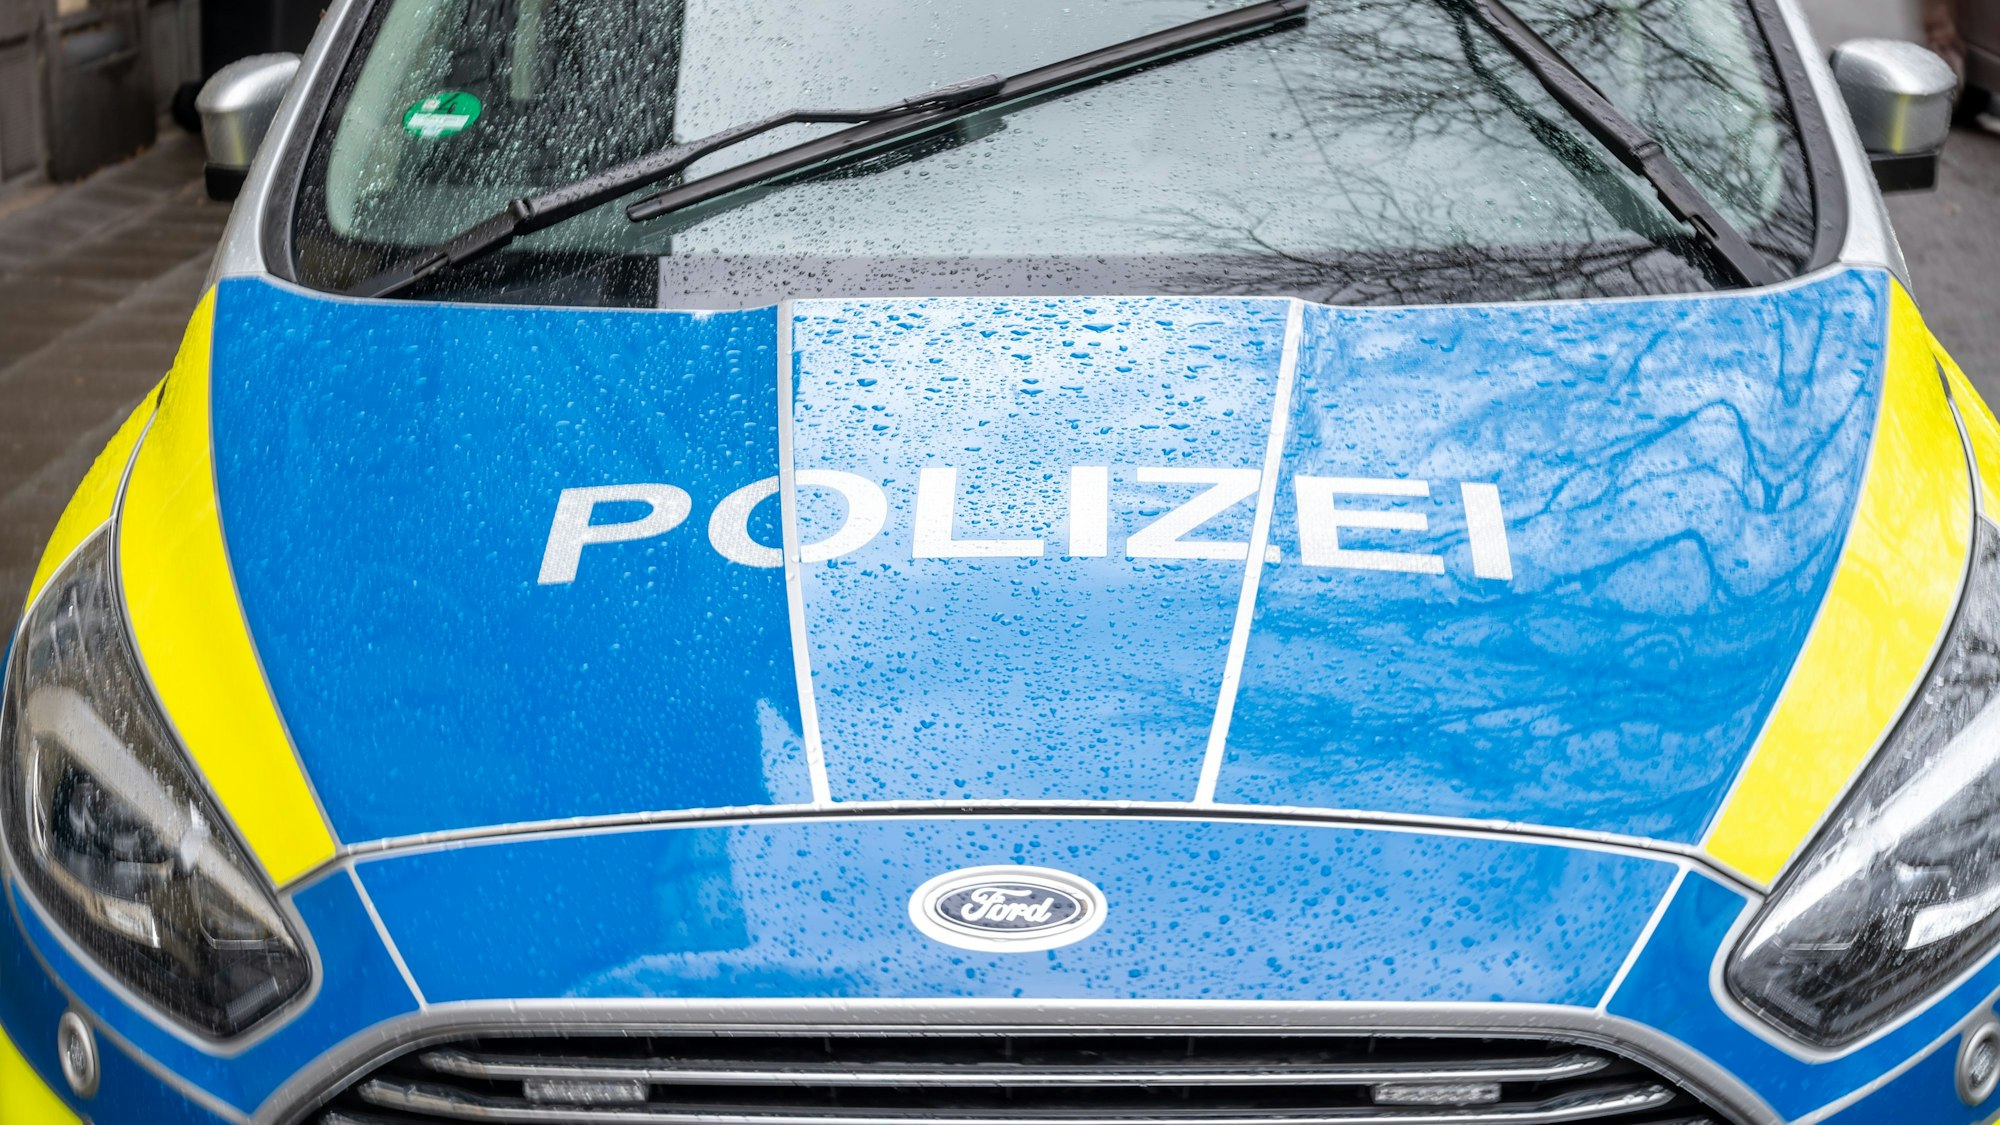 Einsatzfahrzeug der Köln Polizei. Kennzeichen NRW, Automarke Ford. (Symbolbild)